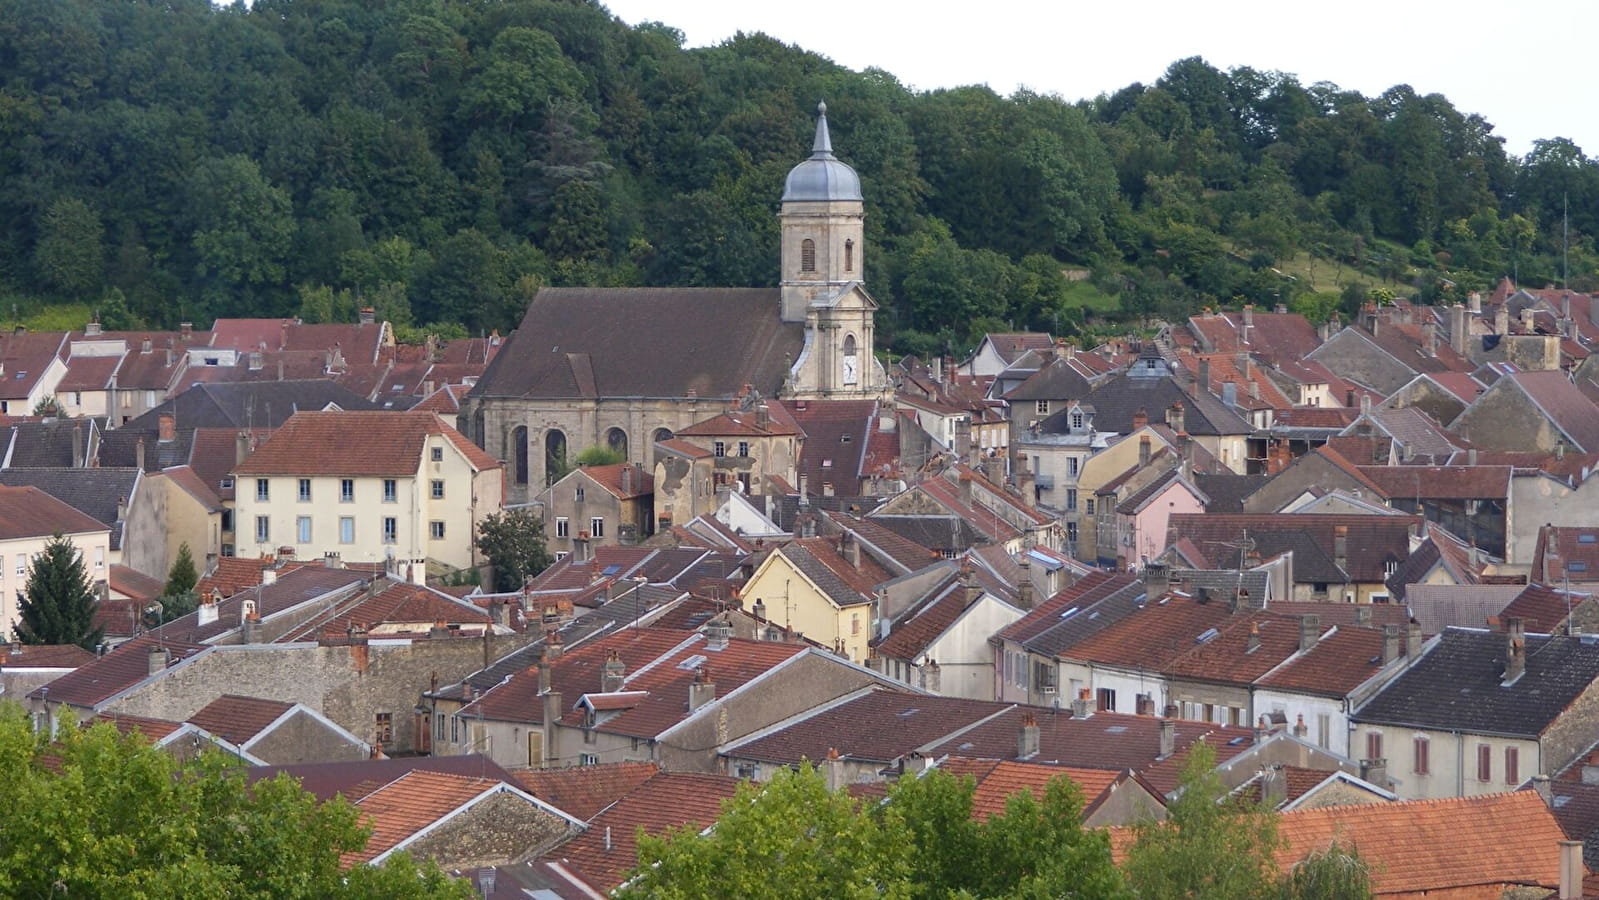 Besichtigung von Jussey, Cité de Caractère (Stadt mit Charakter)